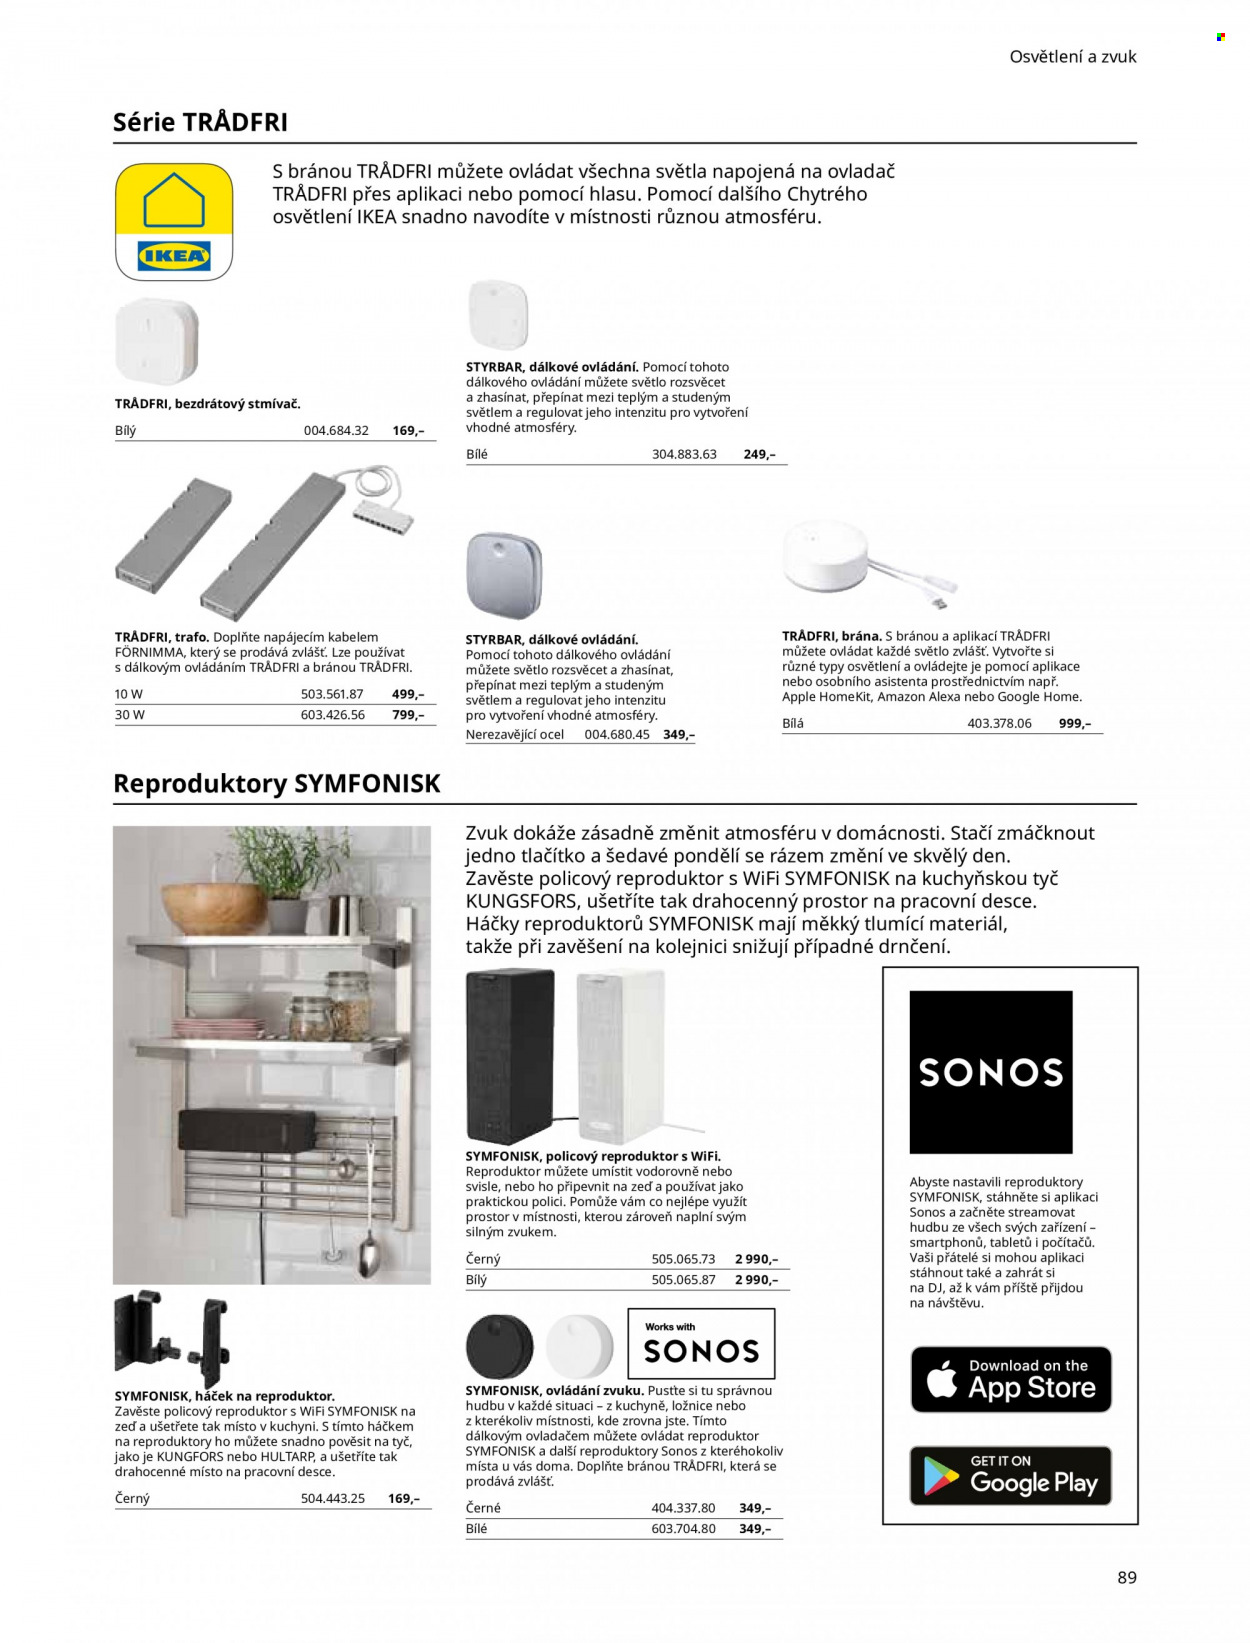 thumbnail - Leták IKEA - Produkty v akci - police, ložnicový systém, háček, Symfonisk. Strana 89.